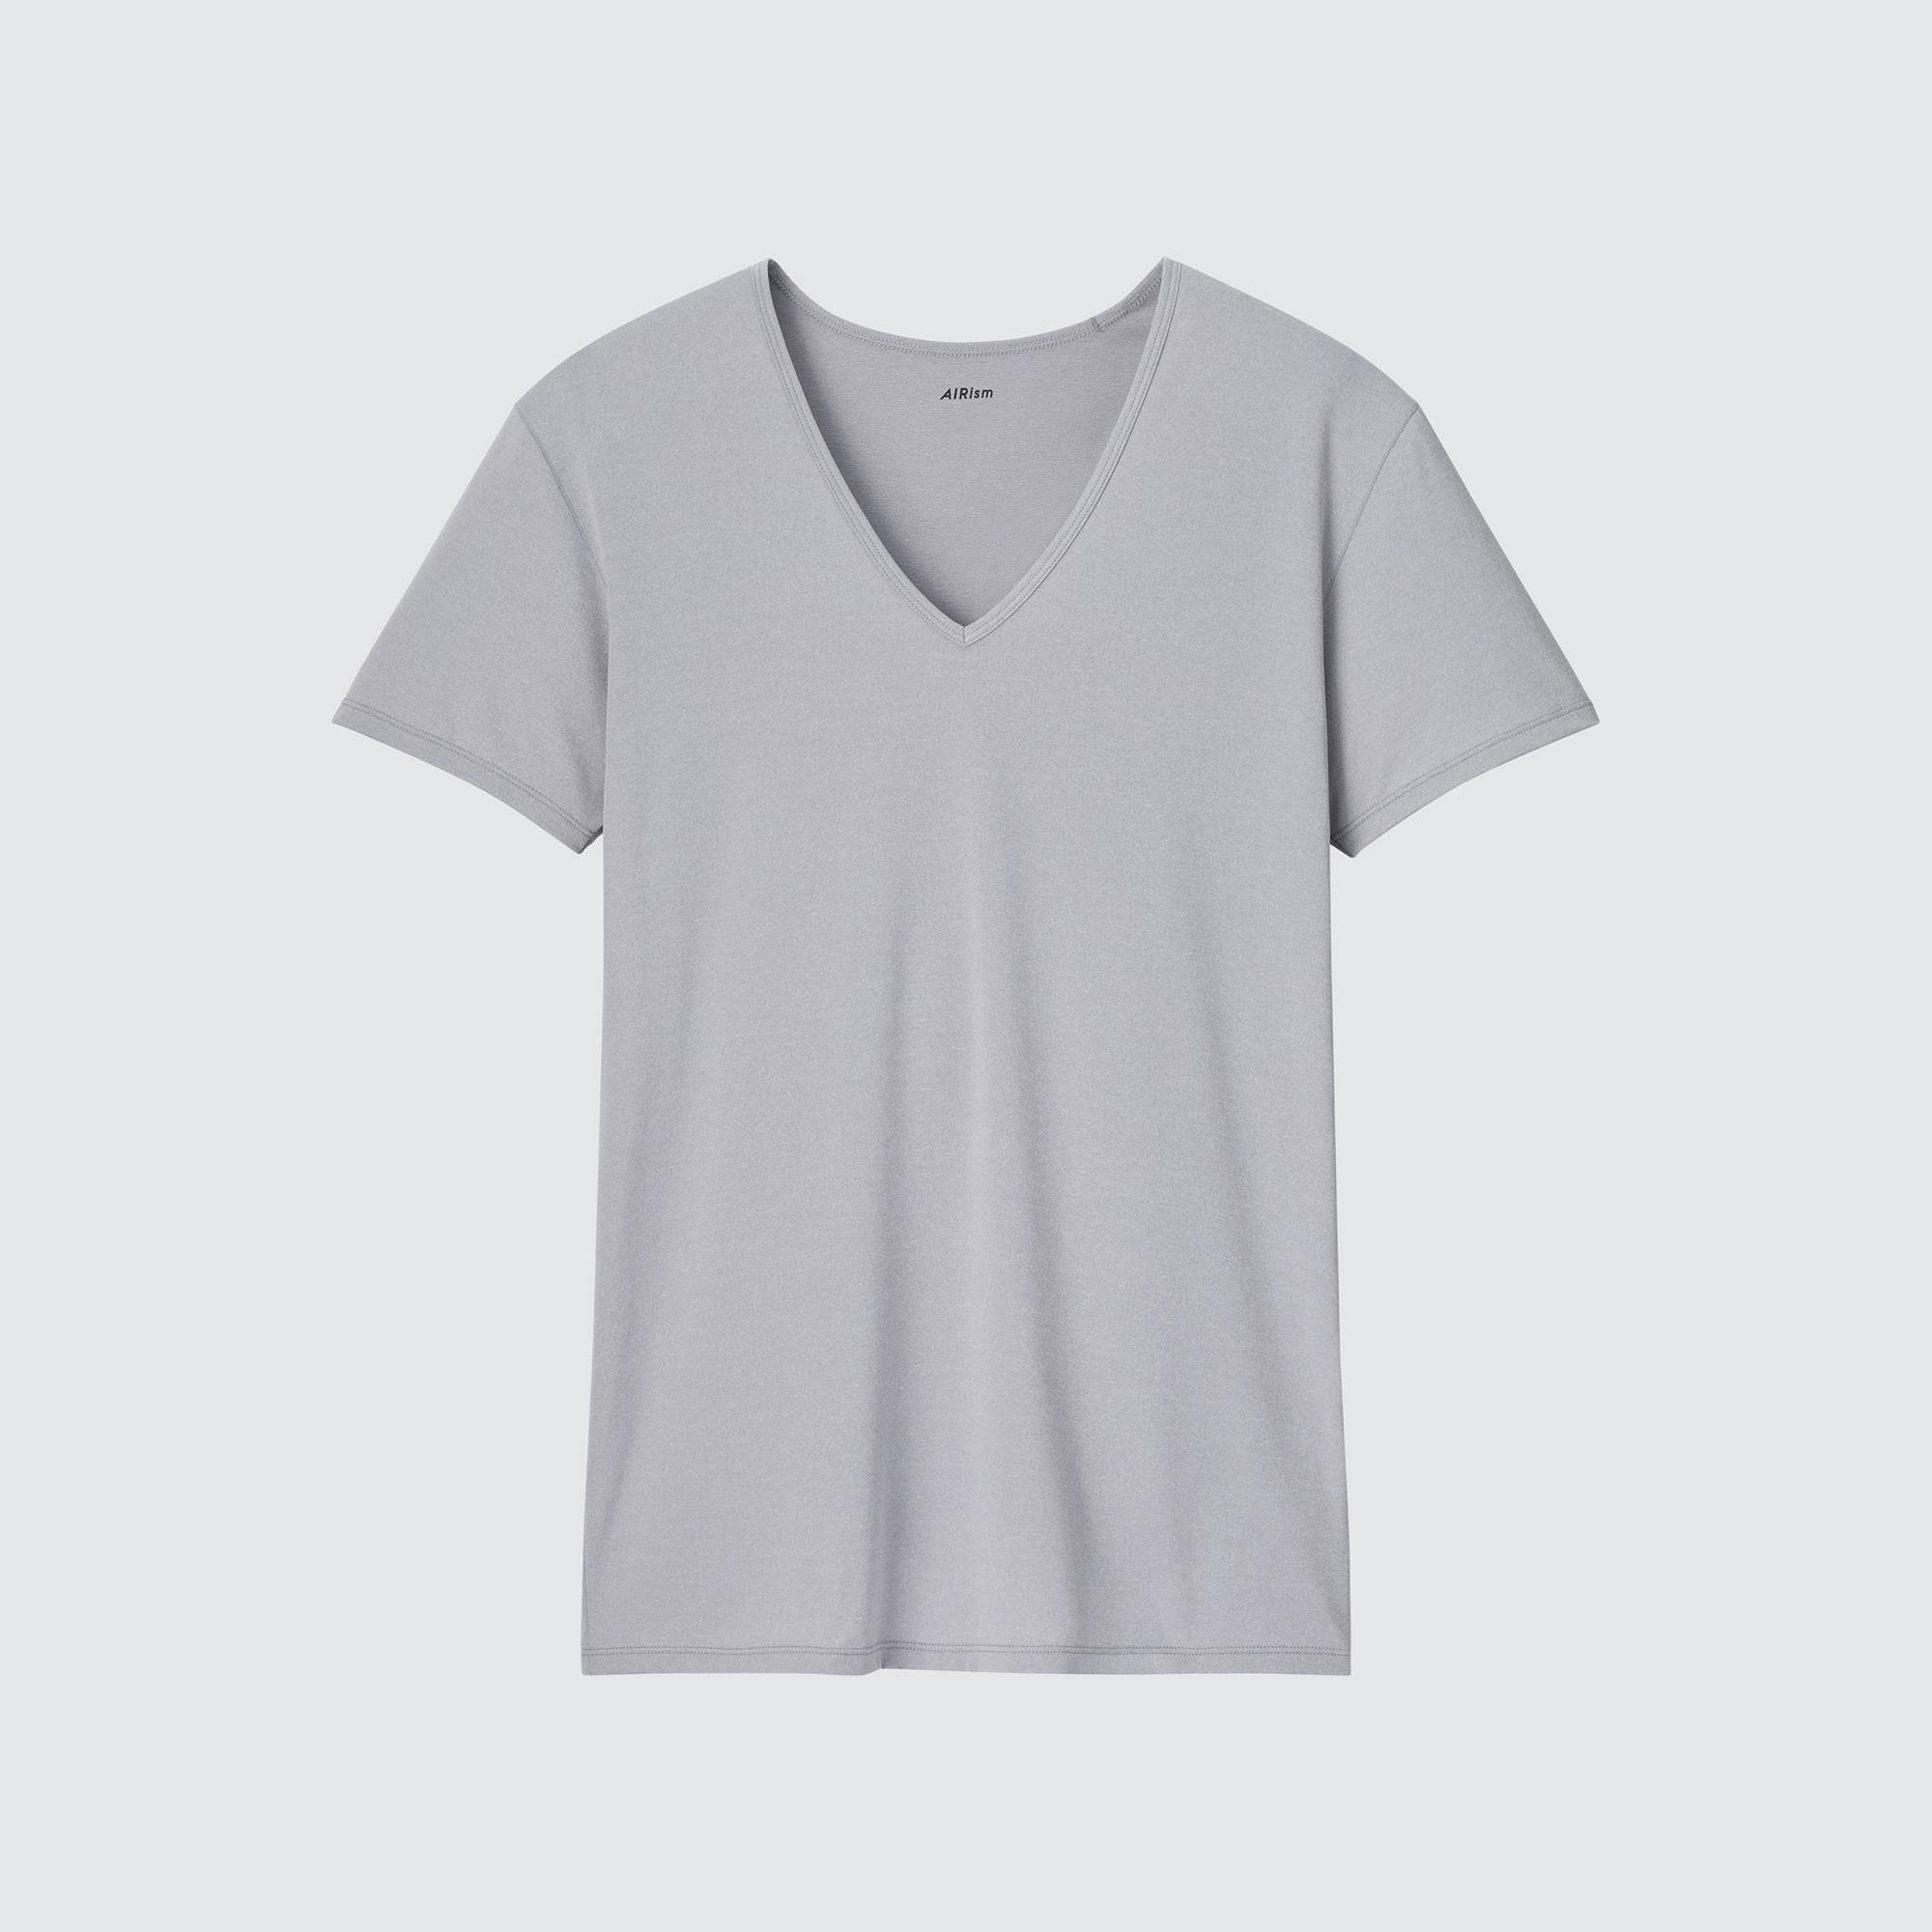 インナーシャツ メンズ 涼しいの関連商品 ユニクロ